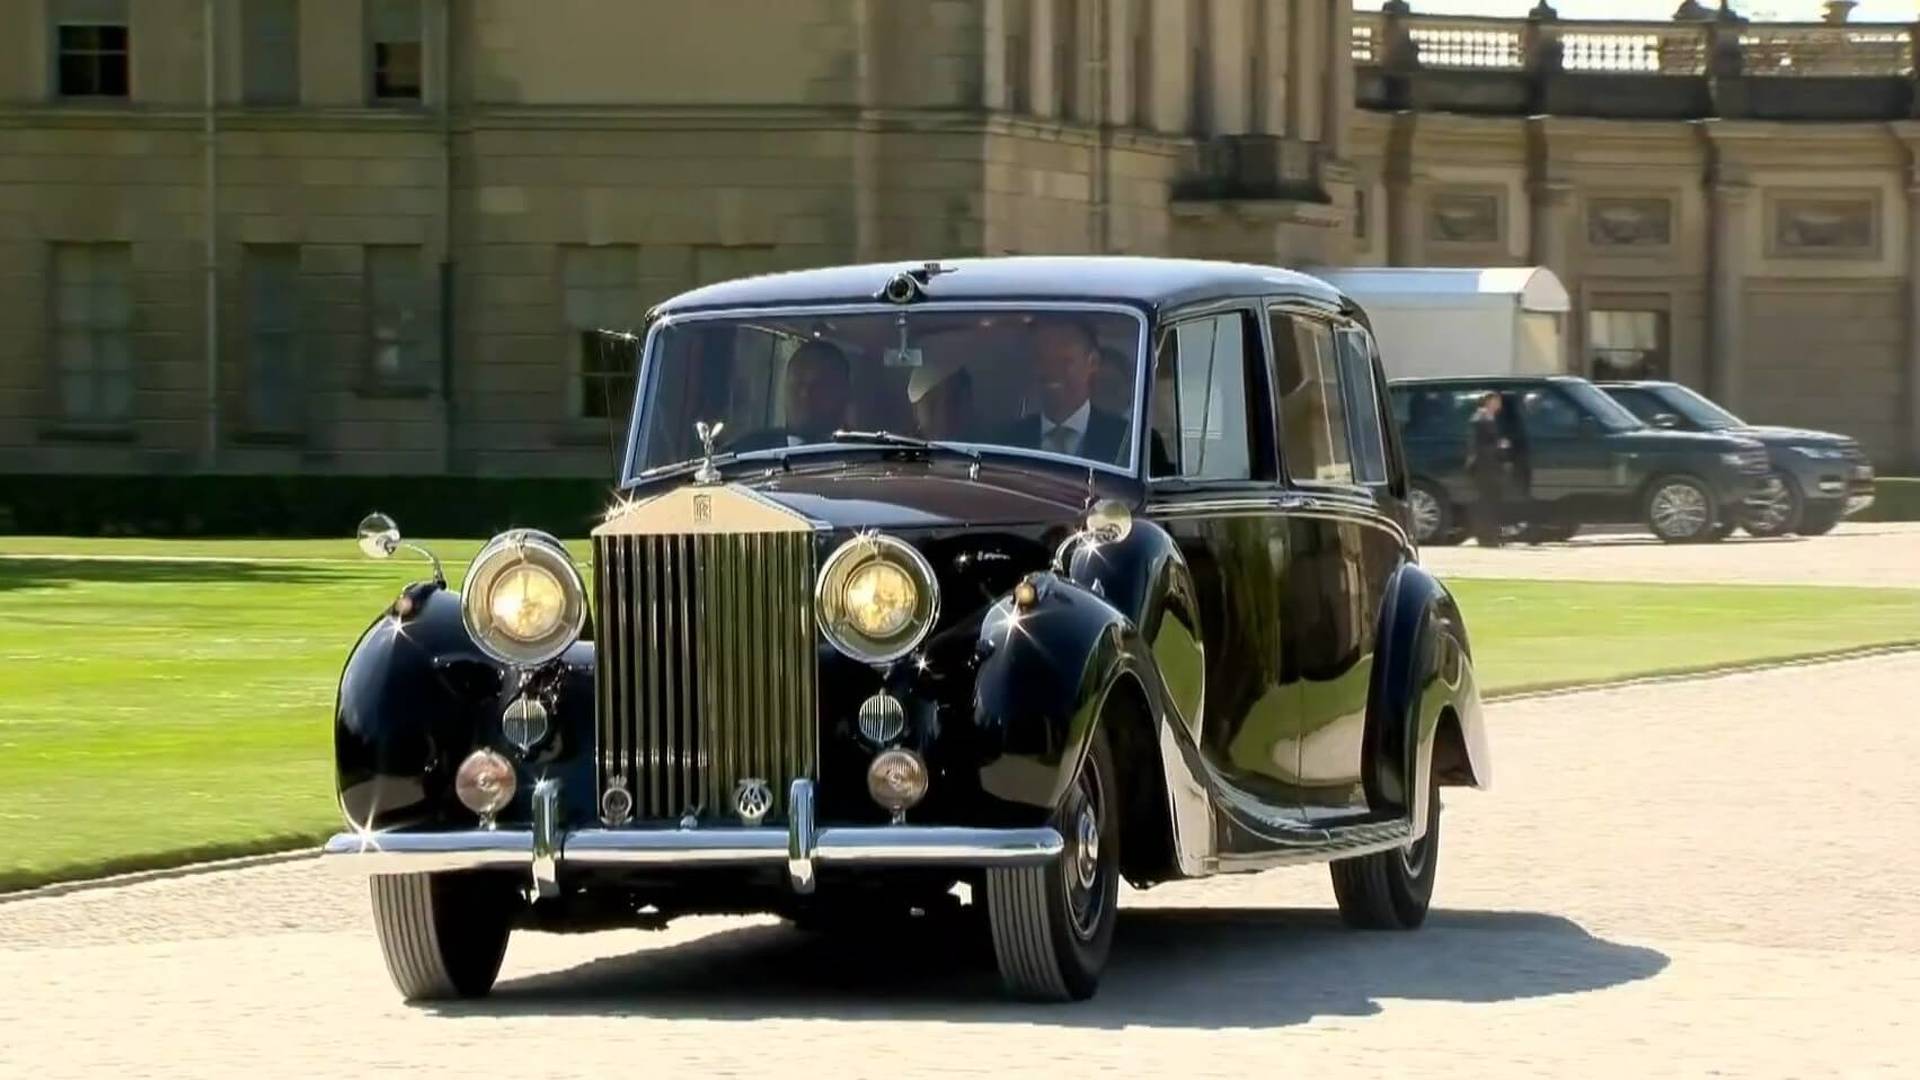 “بالصور” قصة سيارات الزفاف الملكي في بريطانيا على مدار 300 عام